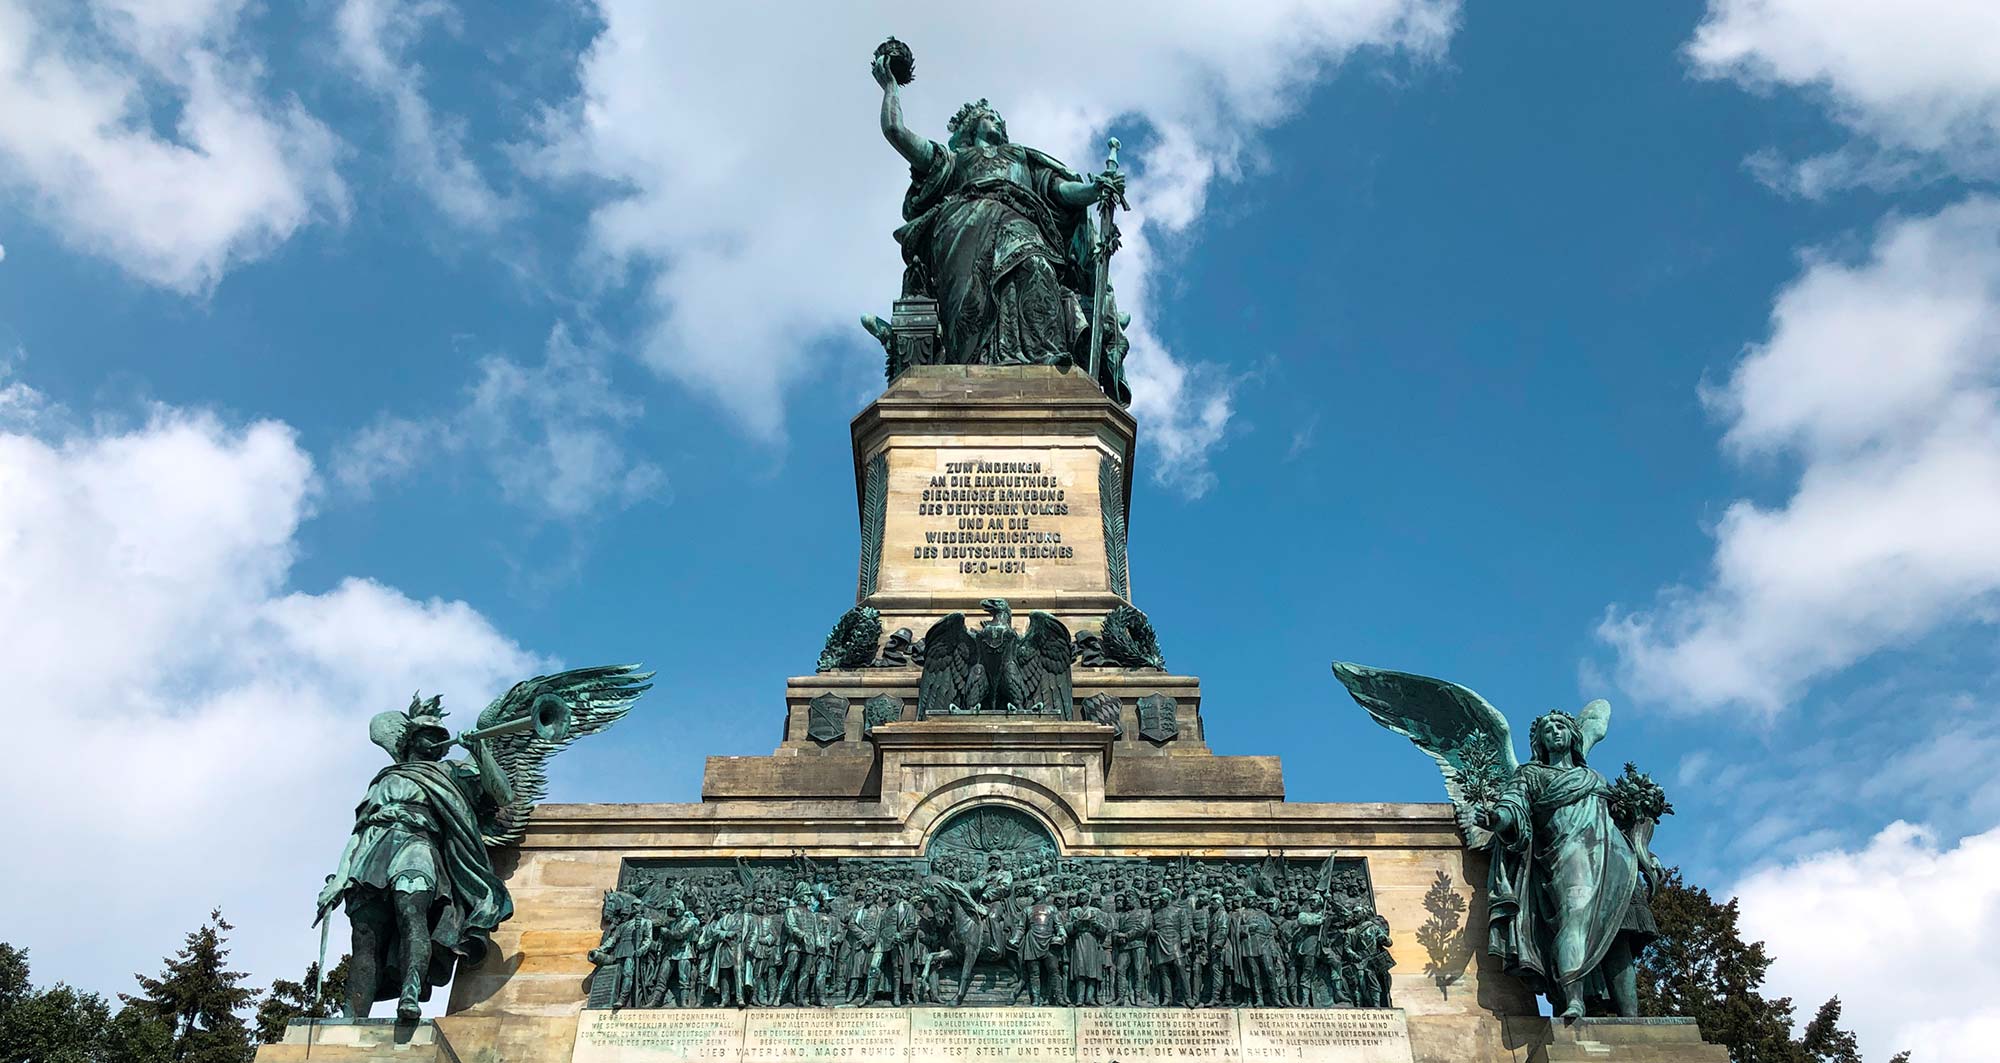 Das Niederwalddenkmal in Rüdesheim am Rhein